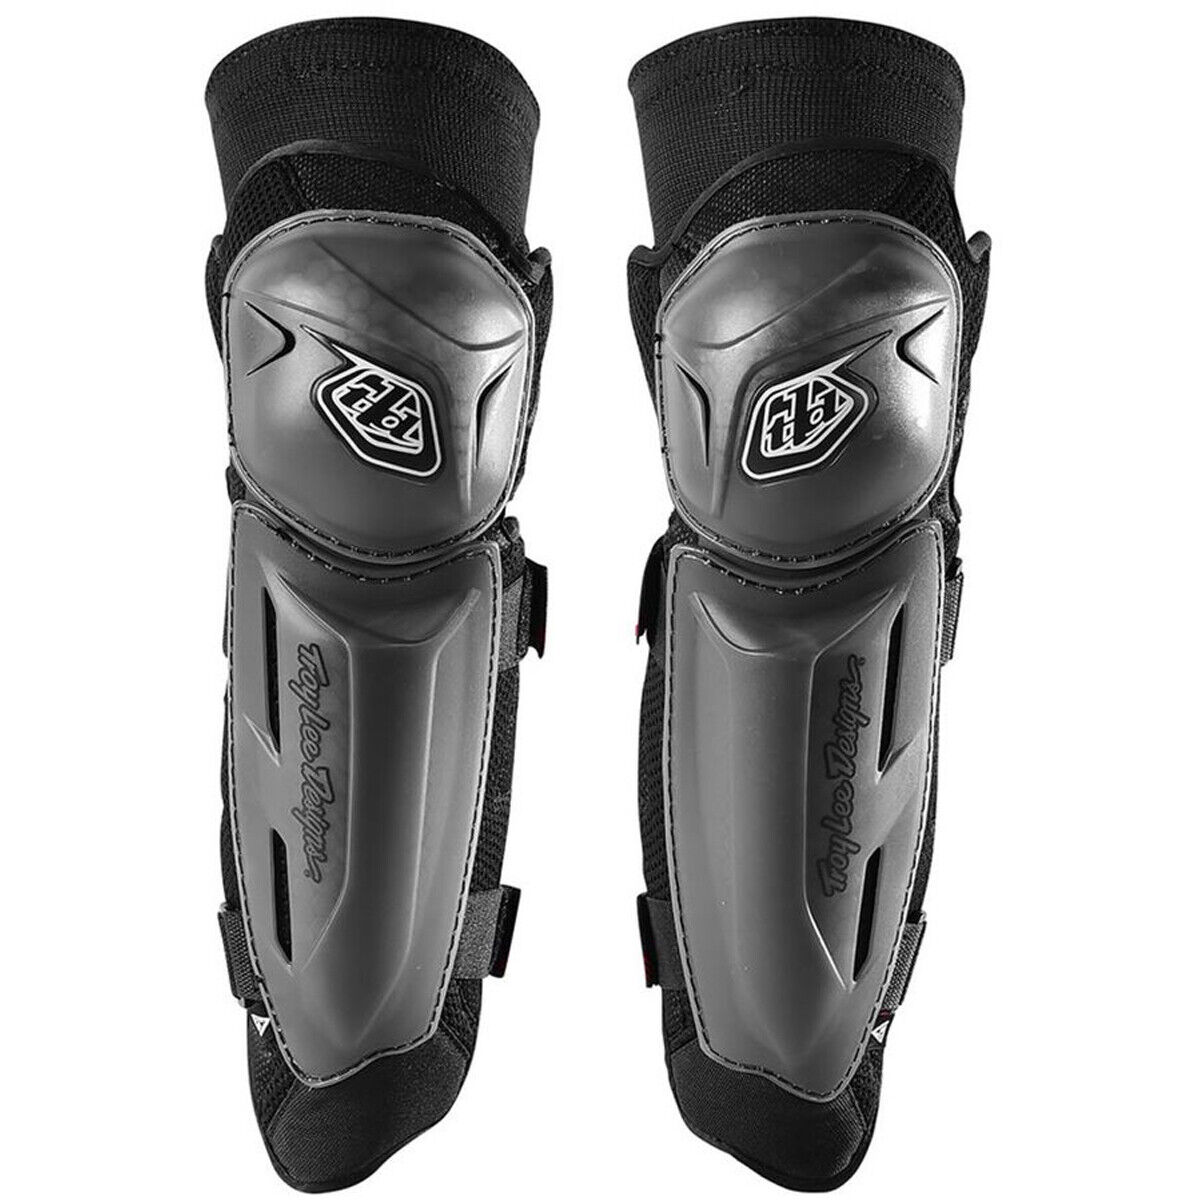 Troy Lee Designs Tld Mx Mtb Method Knee Guards Pair Black Medium / Large